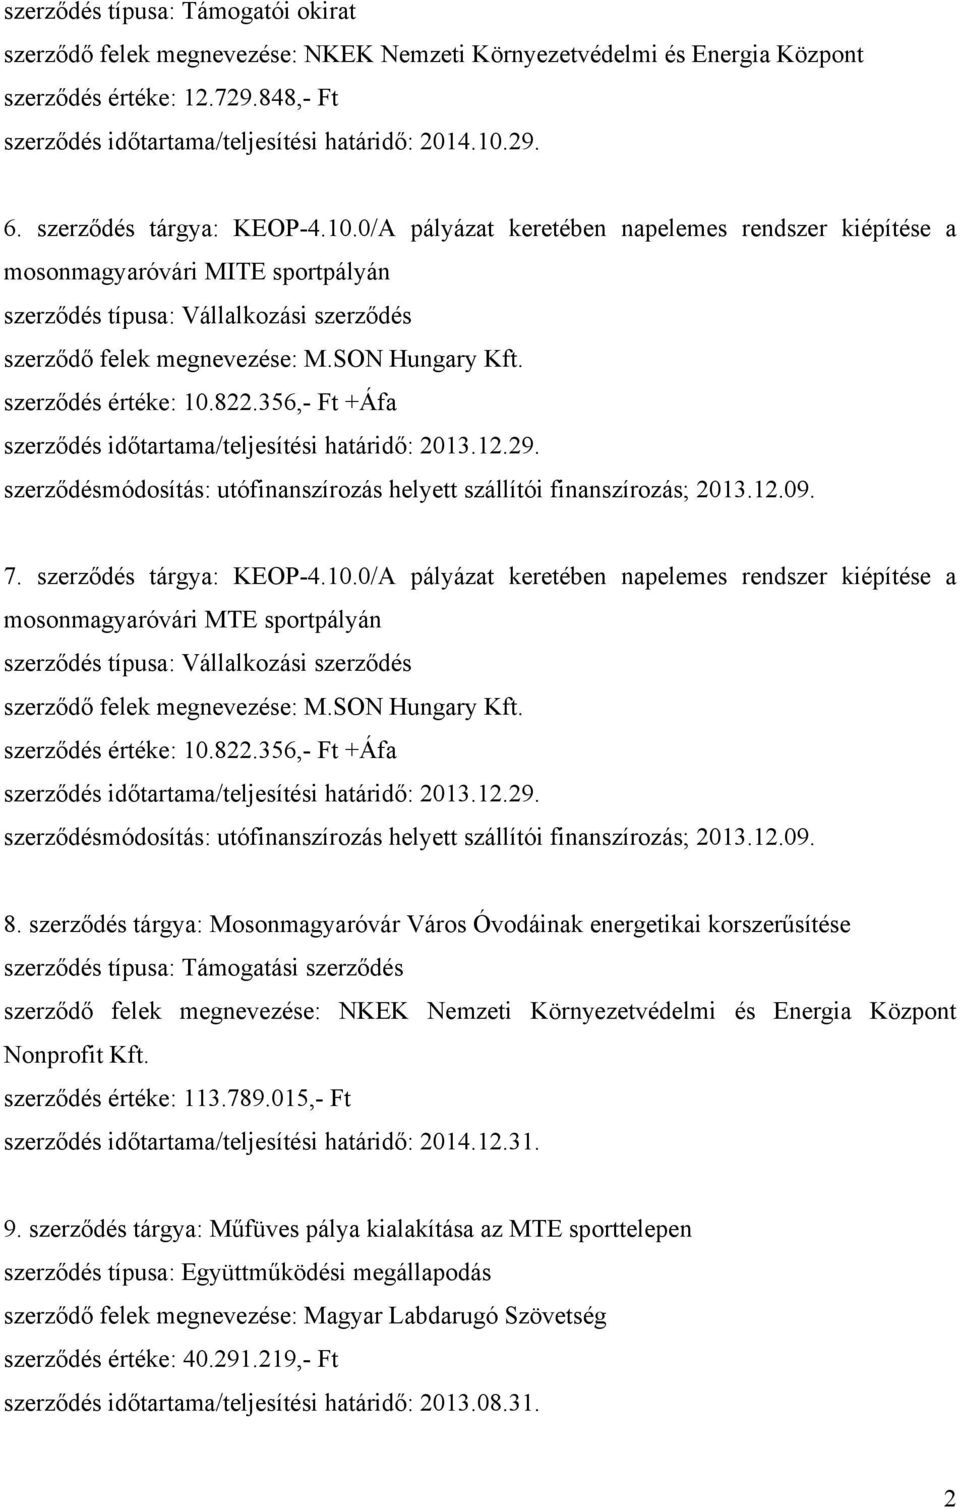 SON Hungary Kft. szerződés értéke: 10.822.356,- Ft +Áfa szerződés időtartama/teljesítési határidő: 2013.12.29. szerződésmódosítás: utófinanszírozás helyett szállítói finanszírozás; 2013.12.09. 7.